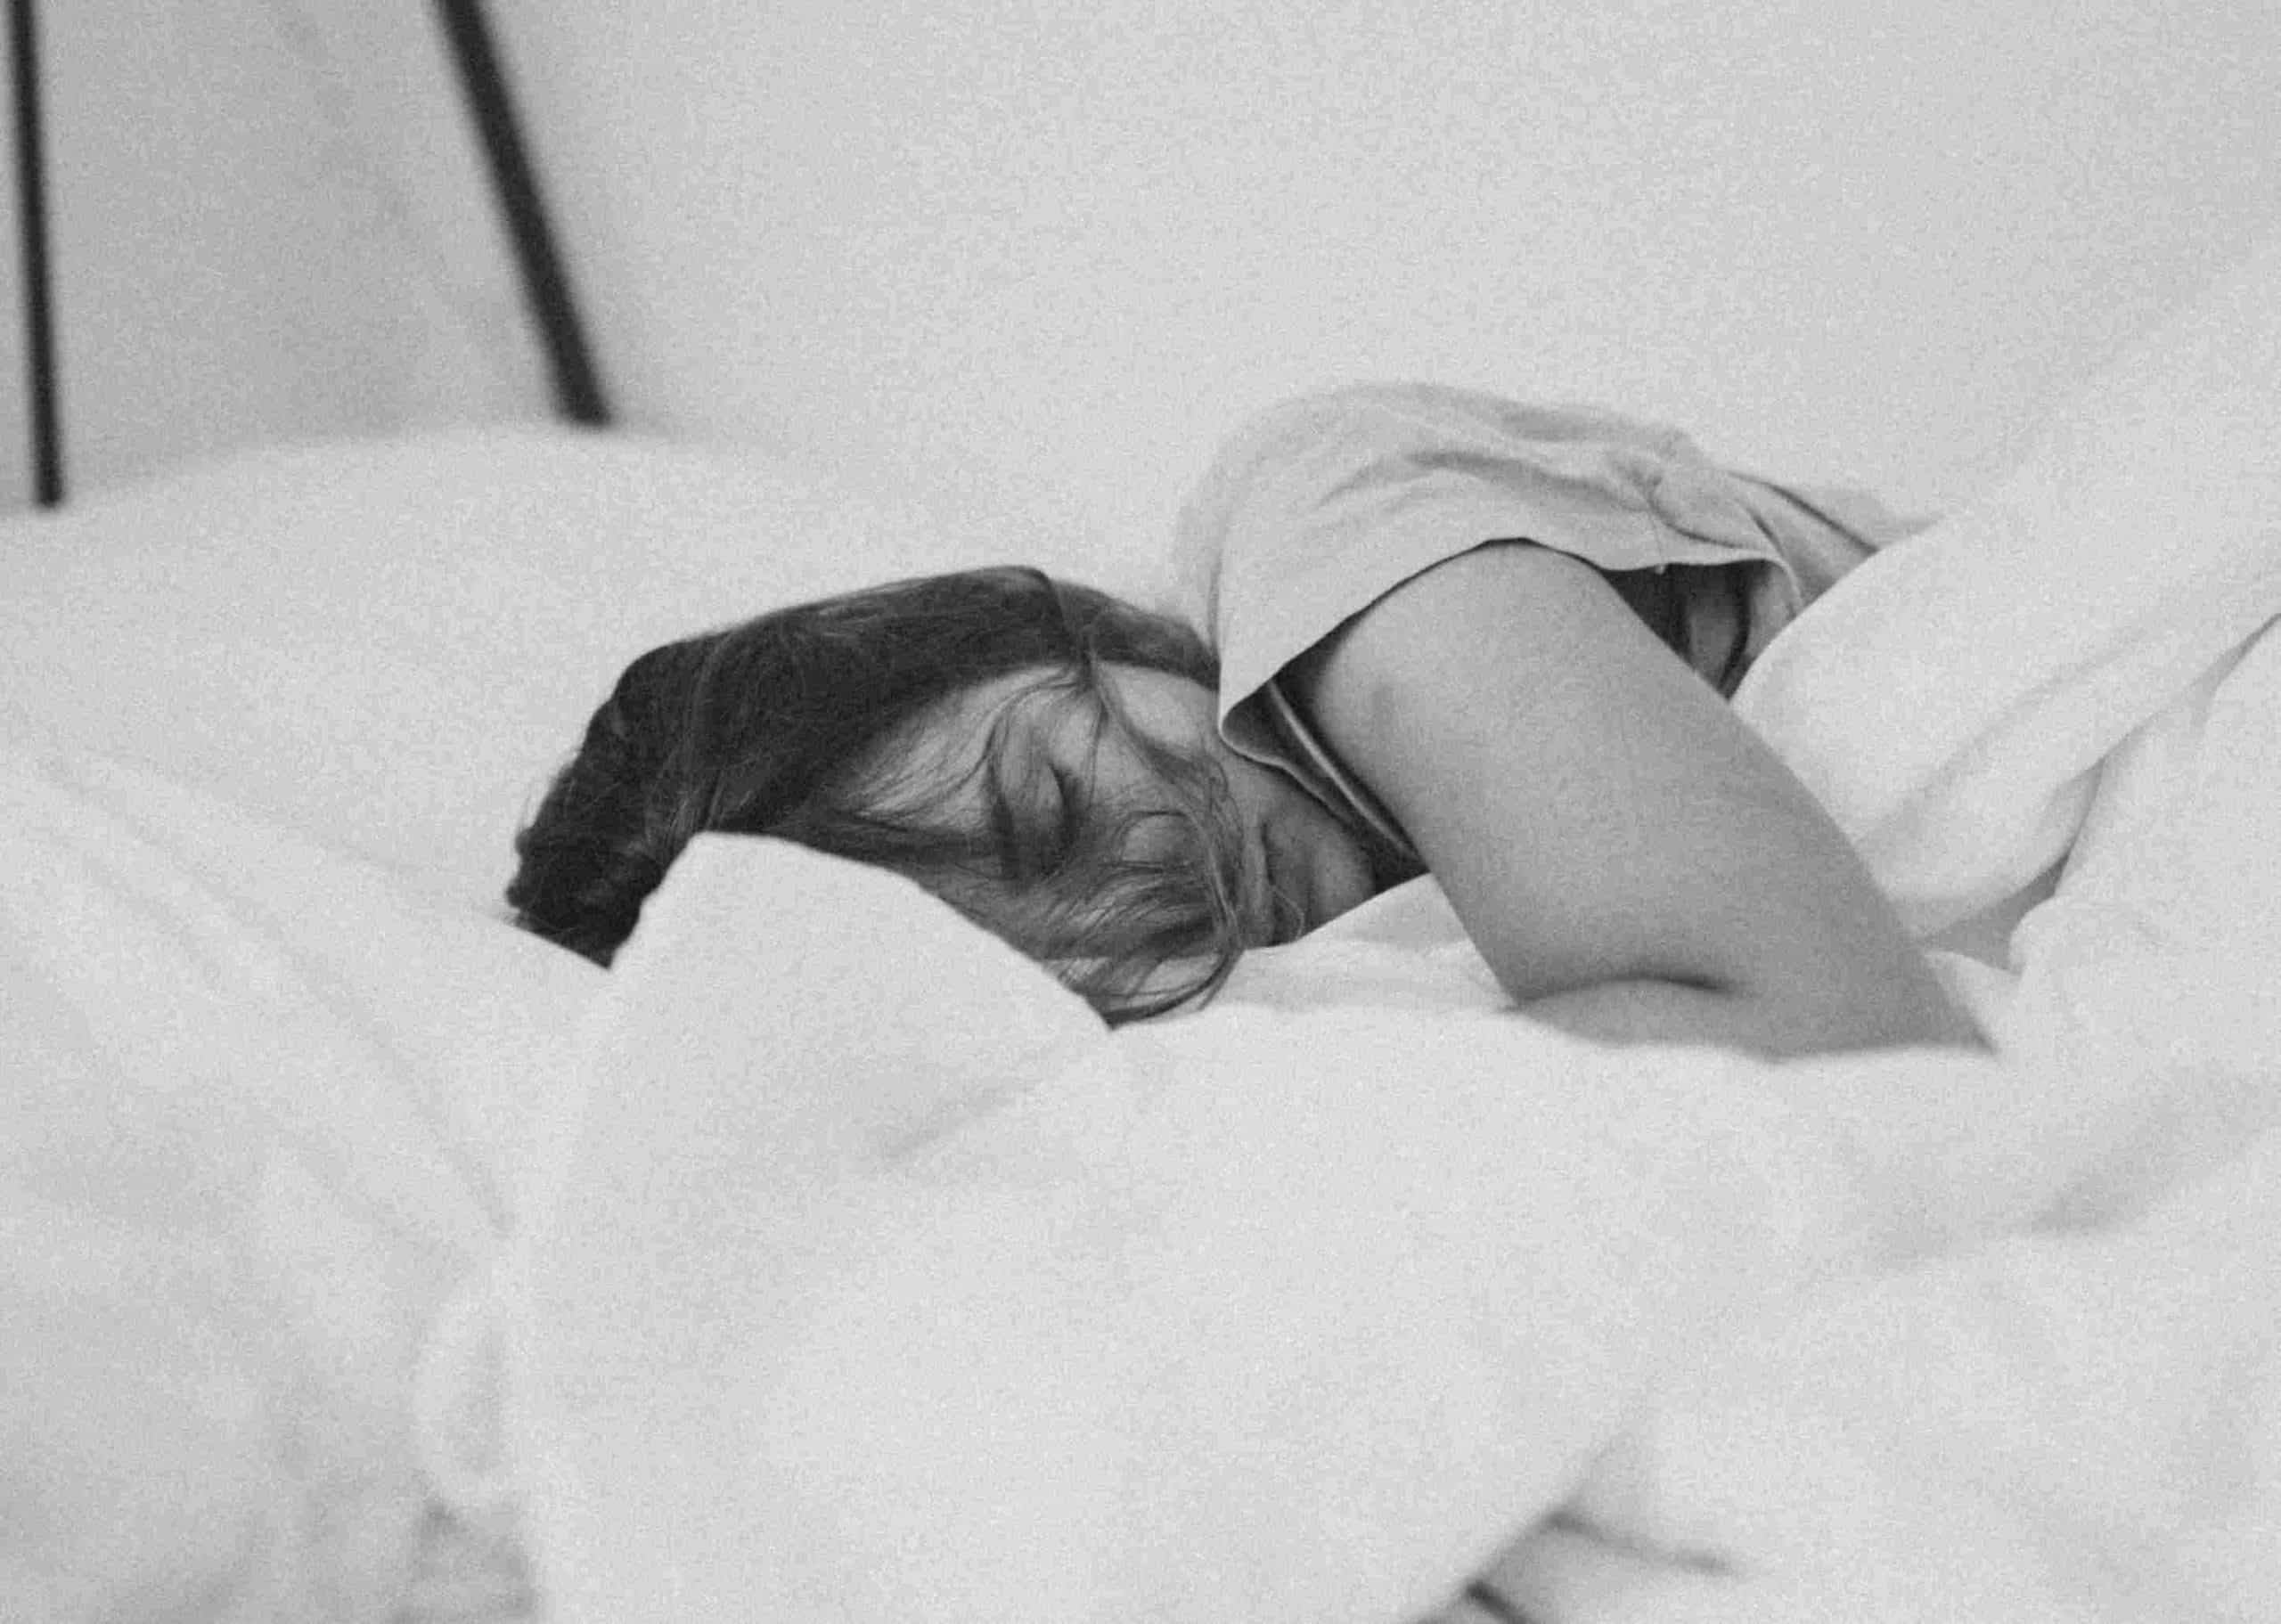 Η ποσότητα ύπνου που χρειάζεται κάποιος εξαρτάται από ποικίλους παράγοντες, συμπεριλαμβανομένου του γενετικού υπόβαθρου.